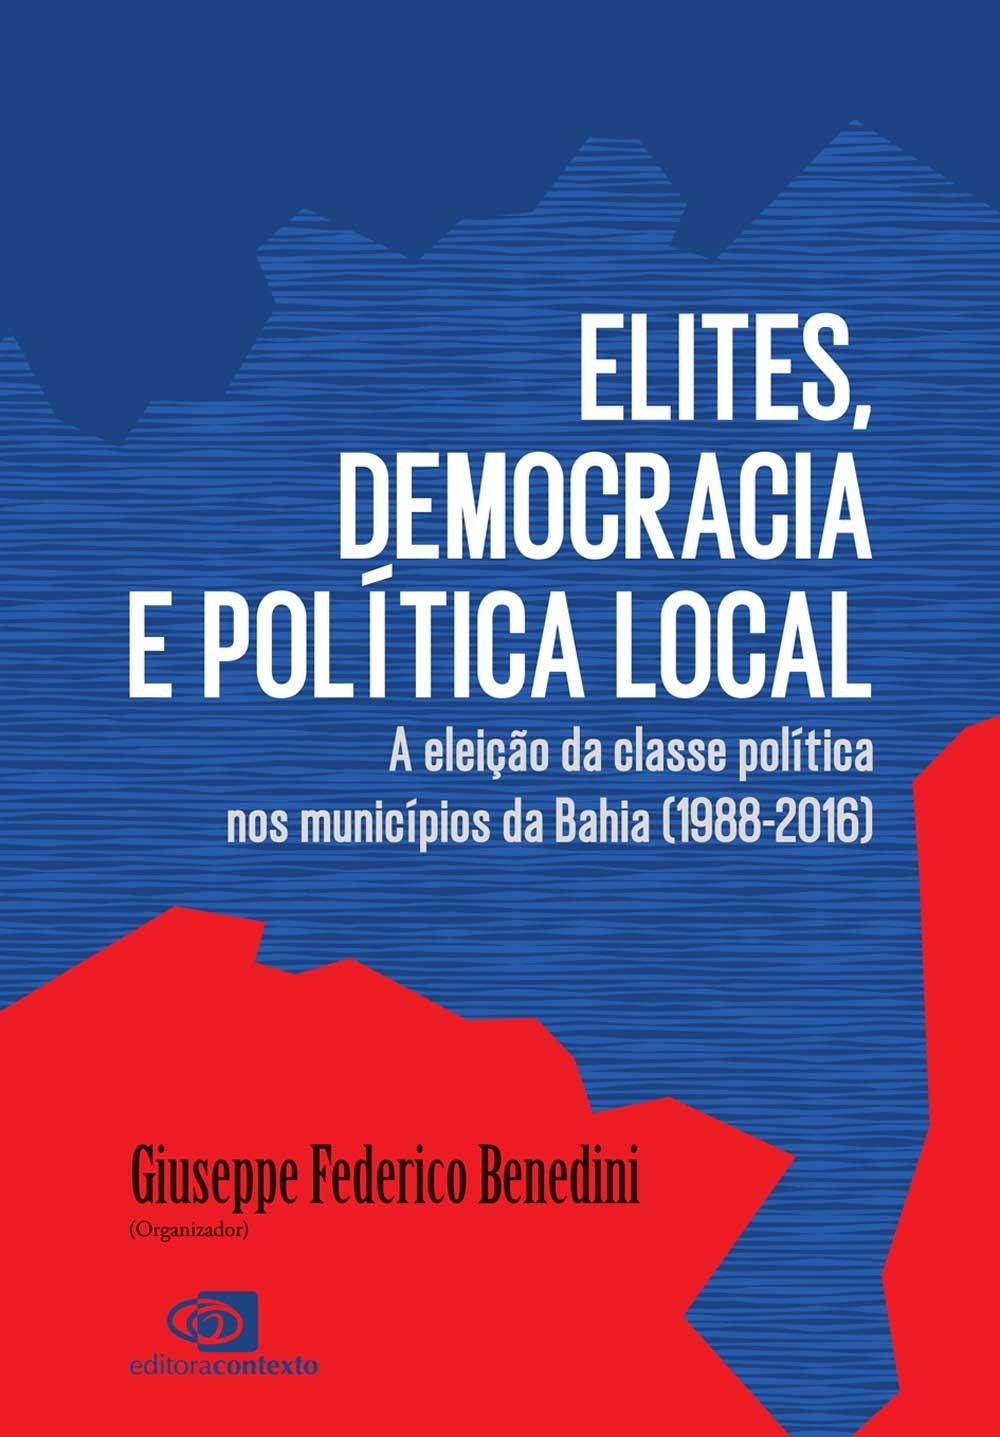 Elites, democracia e política local: a eleição da classe política nos municípios da Bahia (1988-2016)